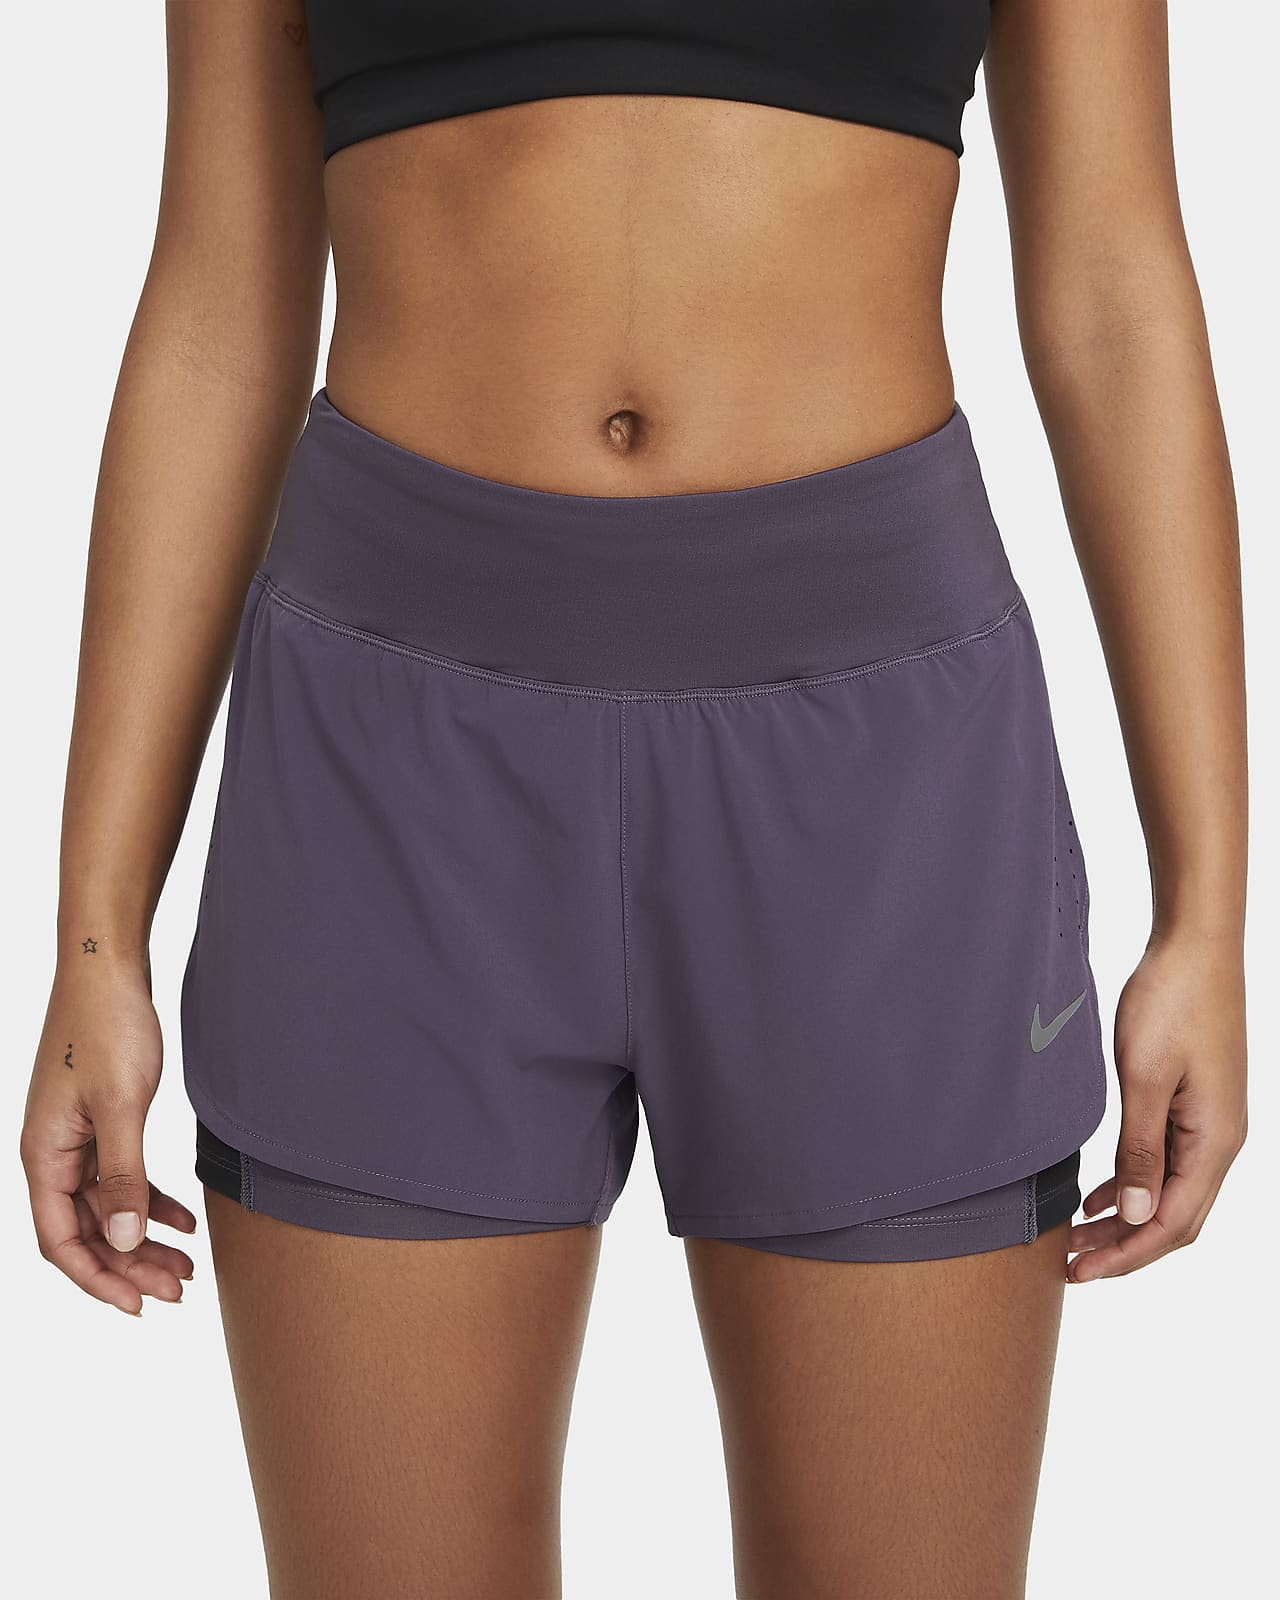 nike running shorts purple